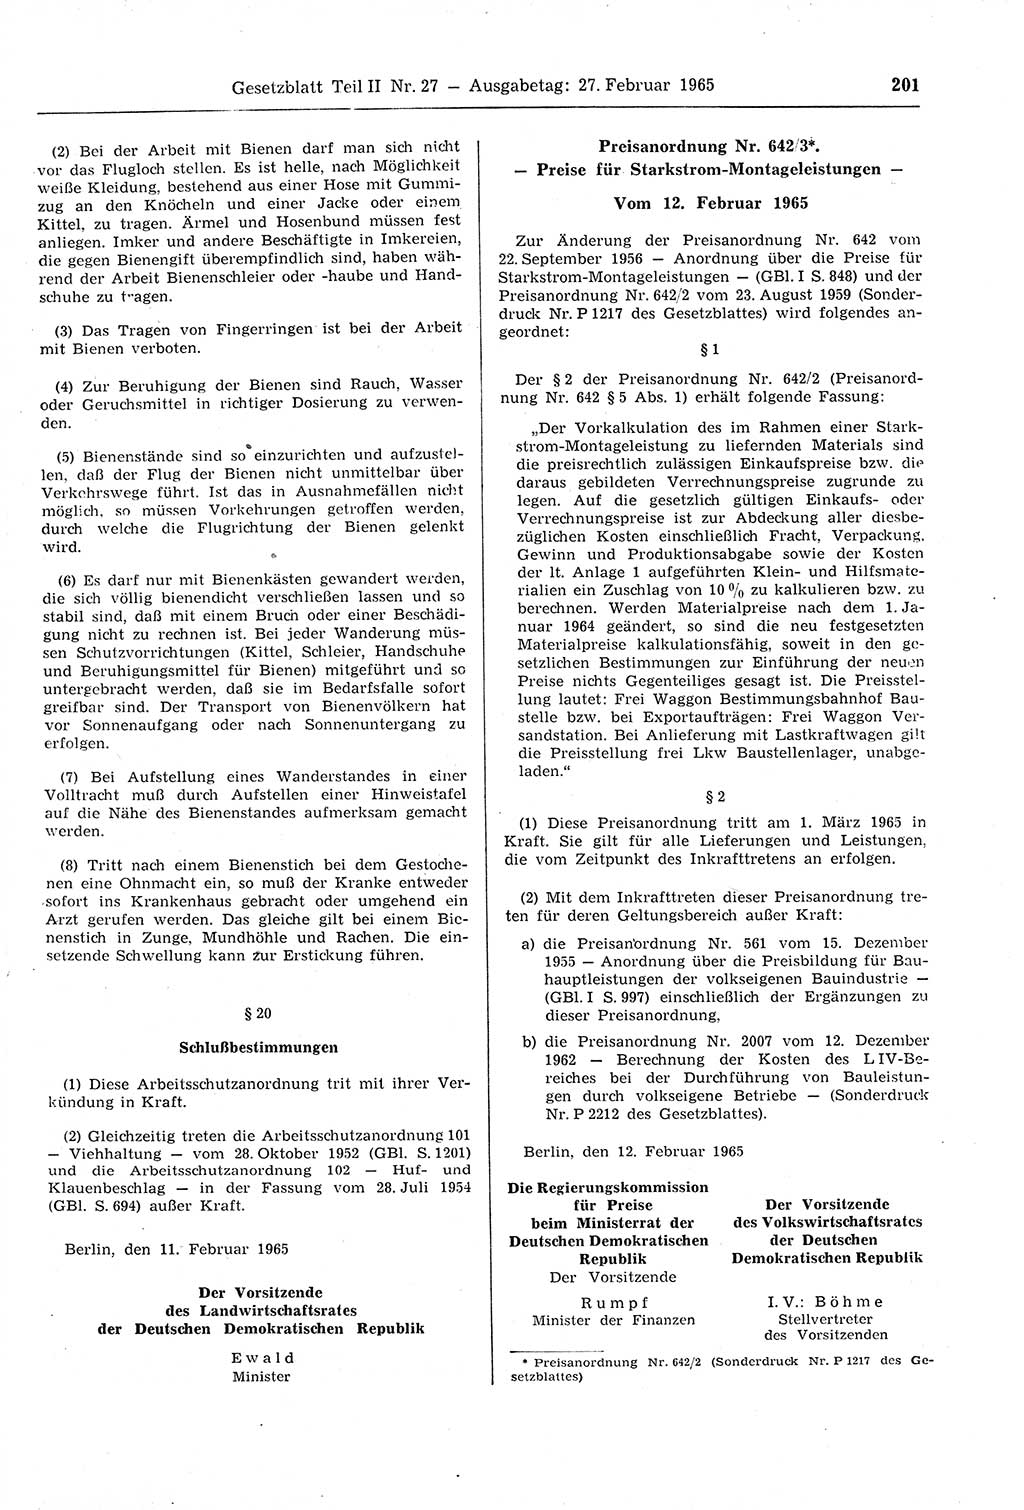 Gesetzblatt (GBl.) der Deutschen Demokratischen Republik (DDR) Teil ⅠⅠ 1965, Seite 201 (GBl. DDR ⅠⅠ 1965, S. 201)